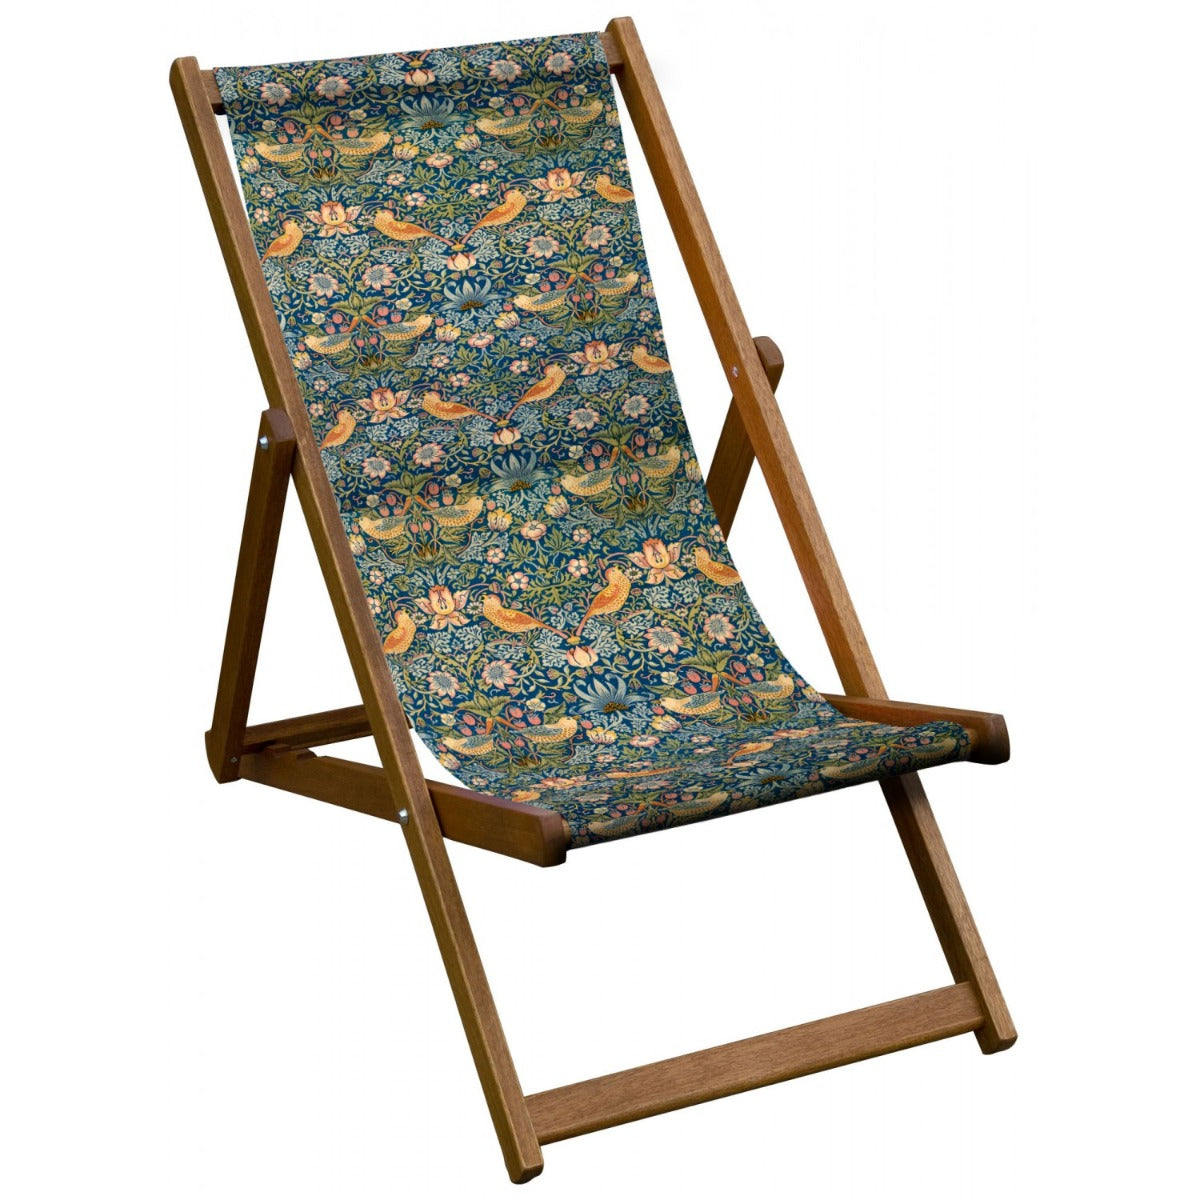 Vintage Inspired Wooden Deckchair with William Morris 'Strawberry Thief' Design